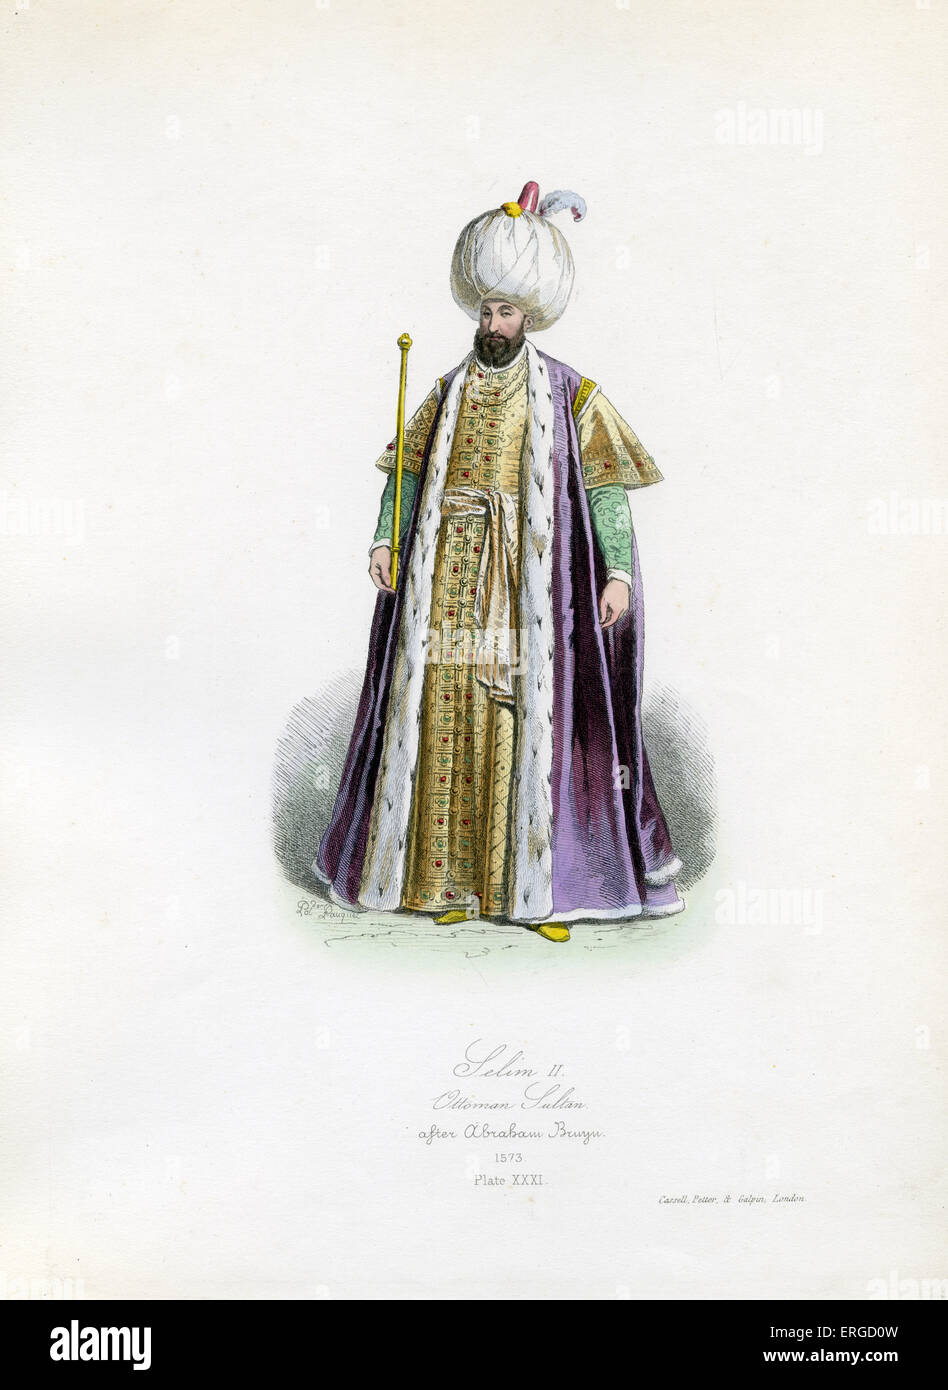 Selim II, 1573 - da incisione di Polidor Pauquet, dopo Abramo Bruyn. Sultano dell'Impero Ottomano (1566 alla morte): 28 maggio Foto Stock